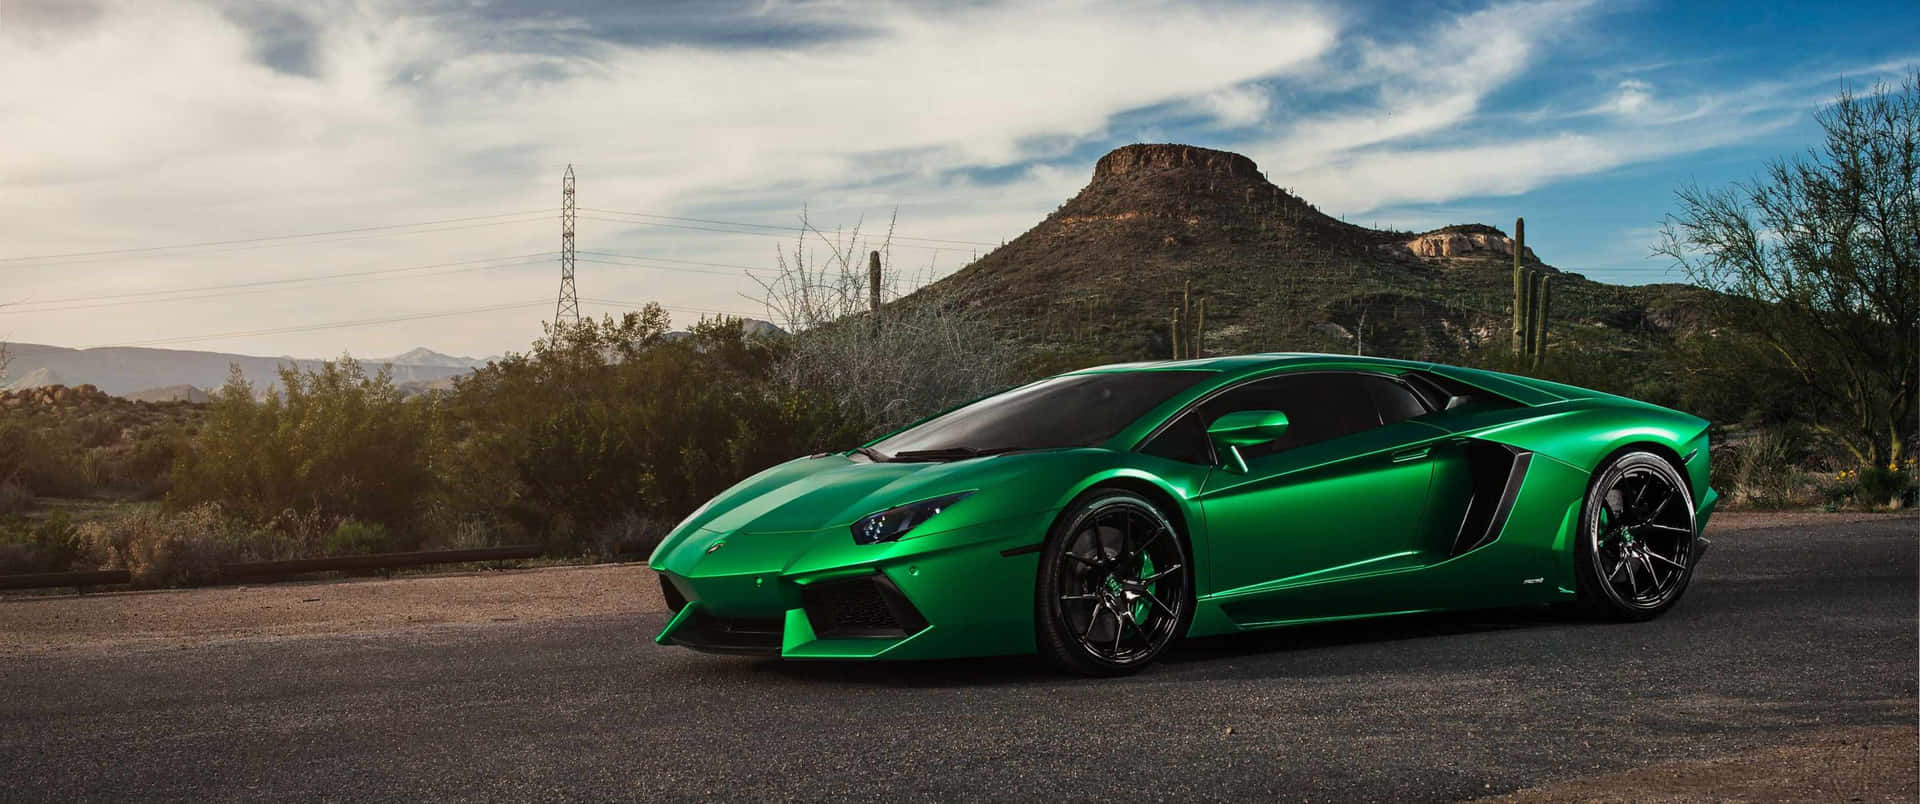 "The Luxury of Lamborghini"